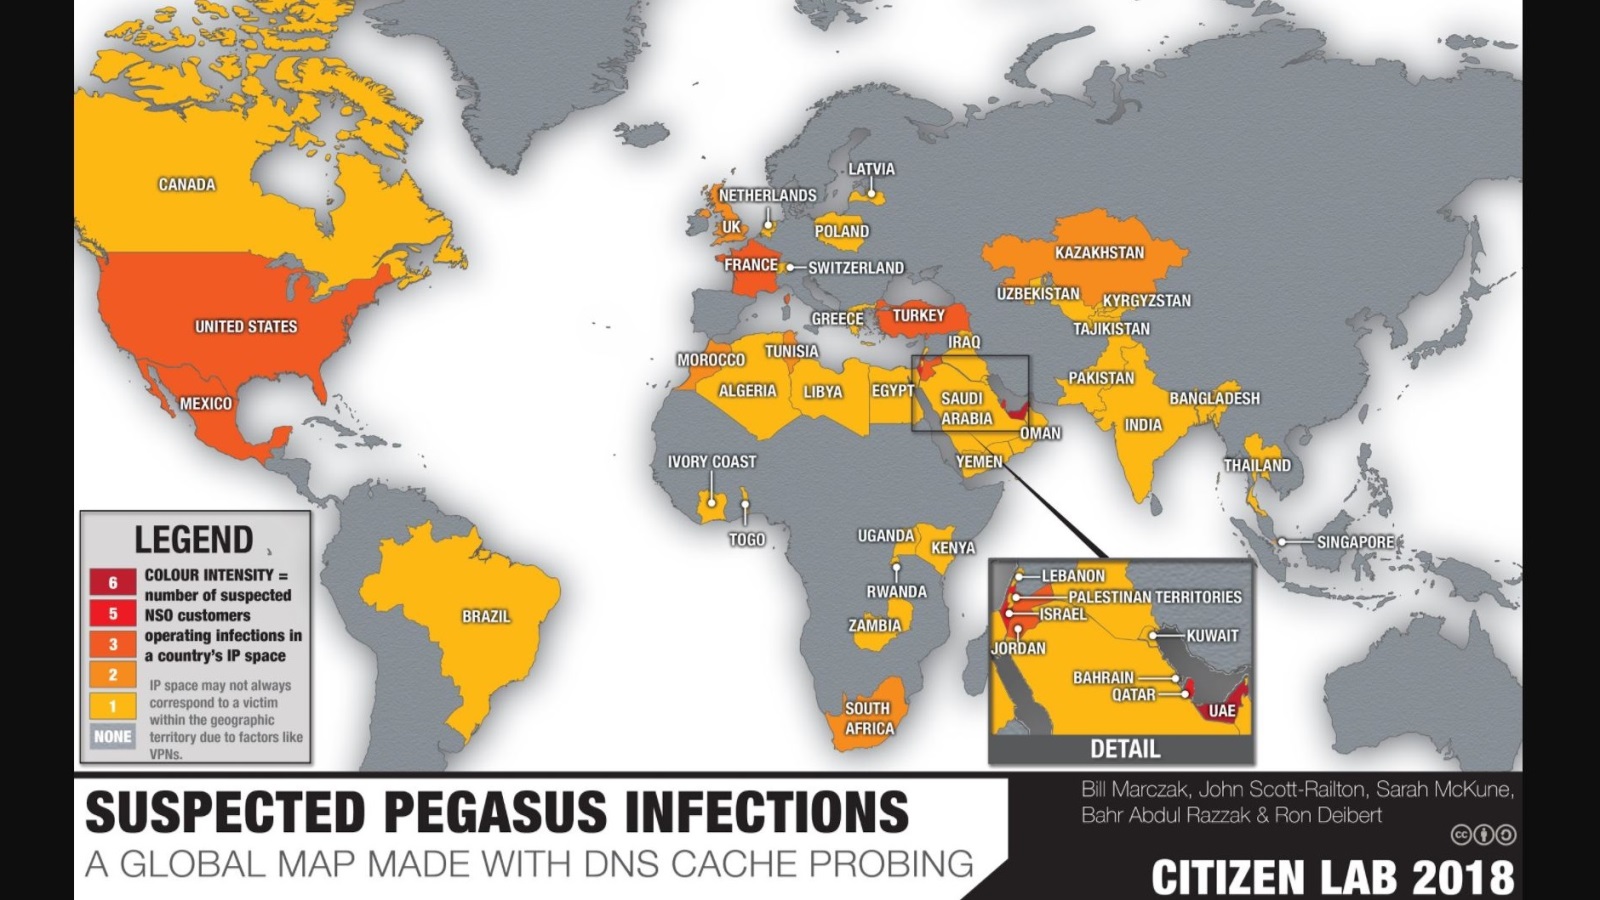  خريطة الدول المصابة ببرنامج بيغاسوس وتظهر الإمارات وإسرائيل باللون الأحمر الذي يشير إلى الأكثر تأثرا (سيتيزن لاب)